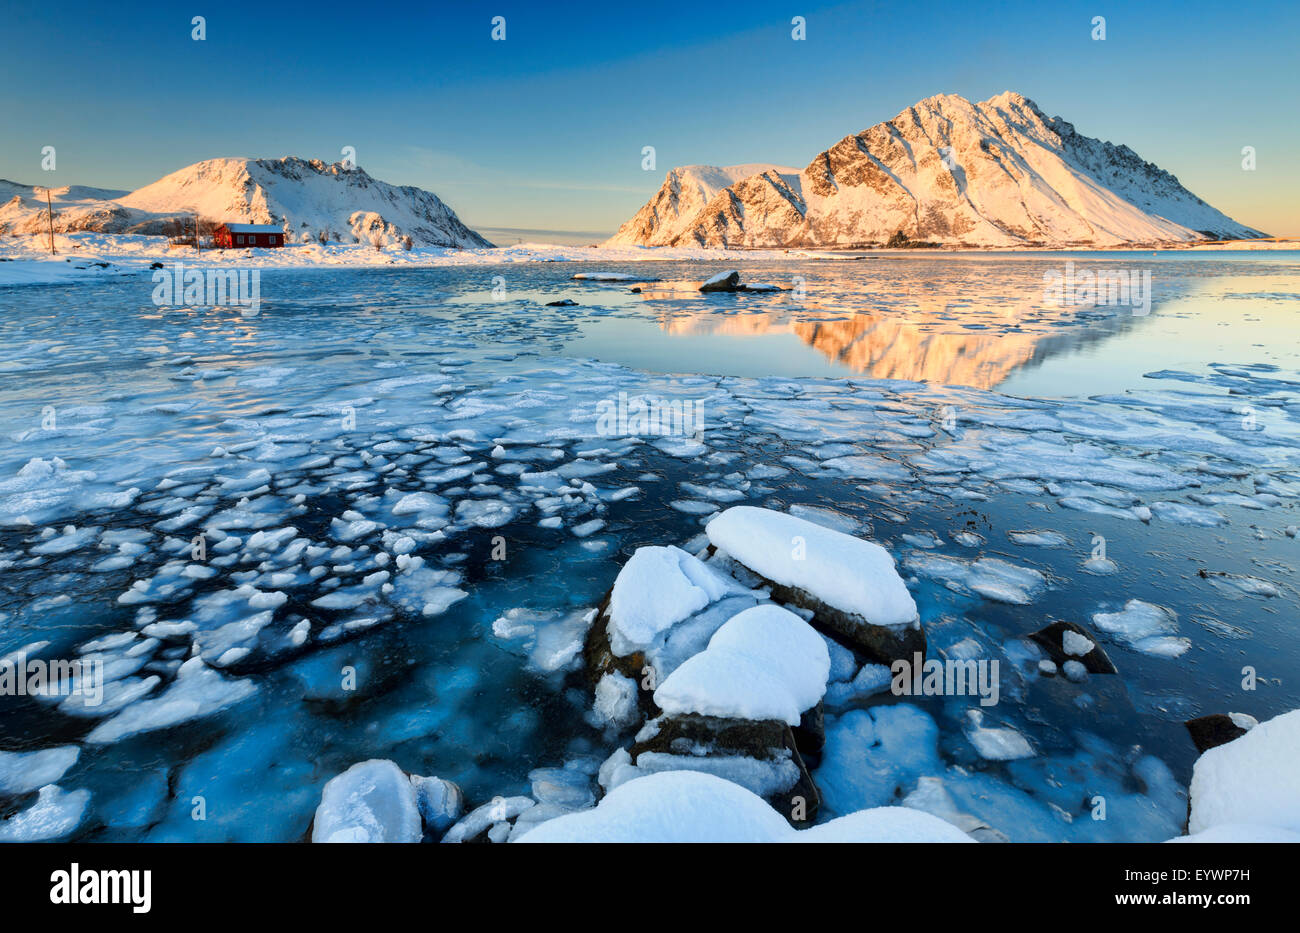 Berge von Gymsoya (Gimsoya) aus Smorten spiegelt sich im kristallklaren teilweise gefrorenen Meer, Lofoten Inseln, Arktis, Norwegen Stockfoto